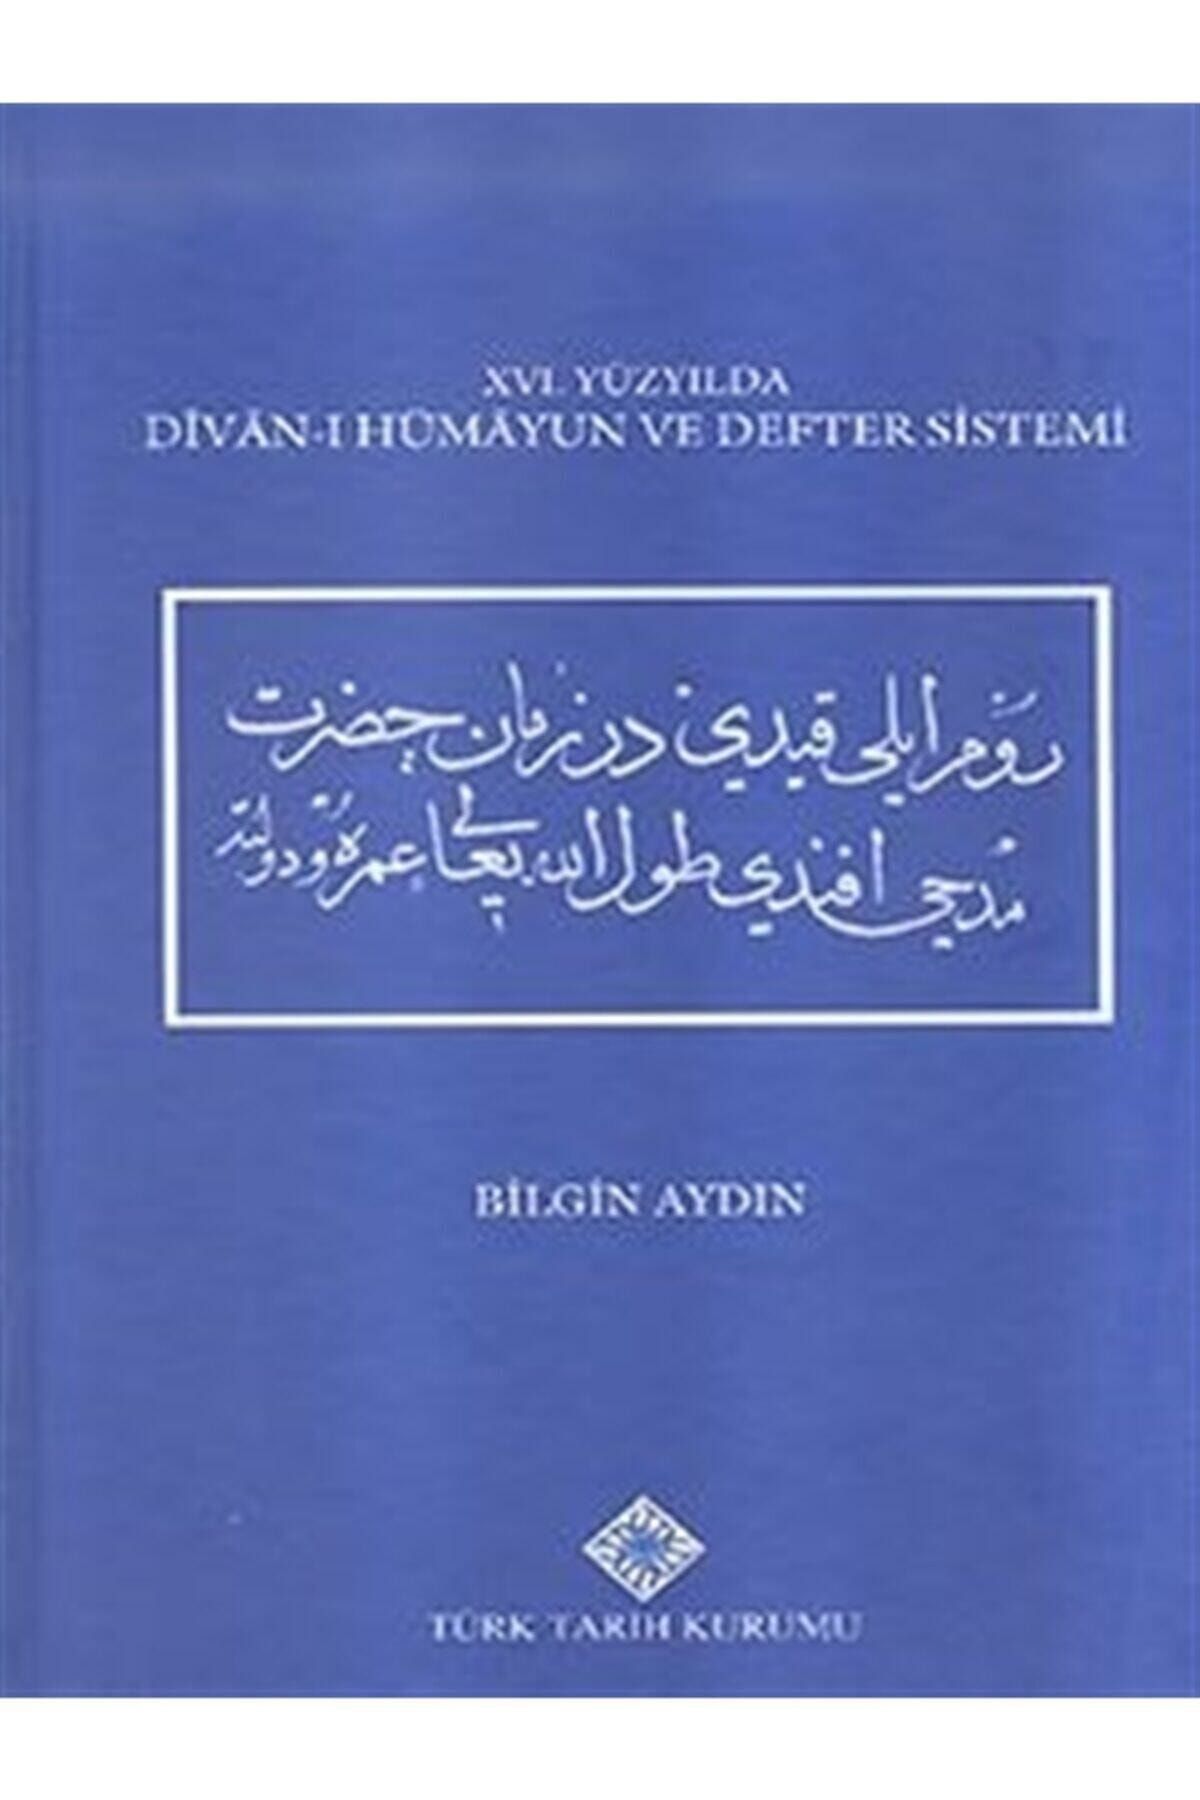 Türk Tarih Kurumu Yayınları 16. Yüzyılda Divan-ı Hümayun Ve Defter Sistemi